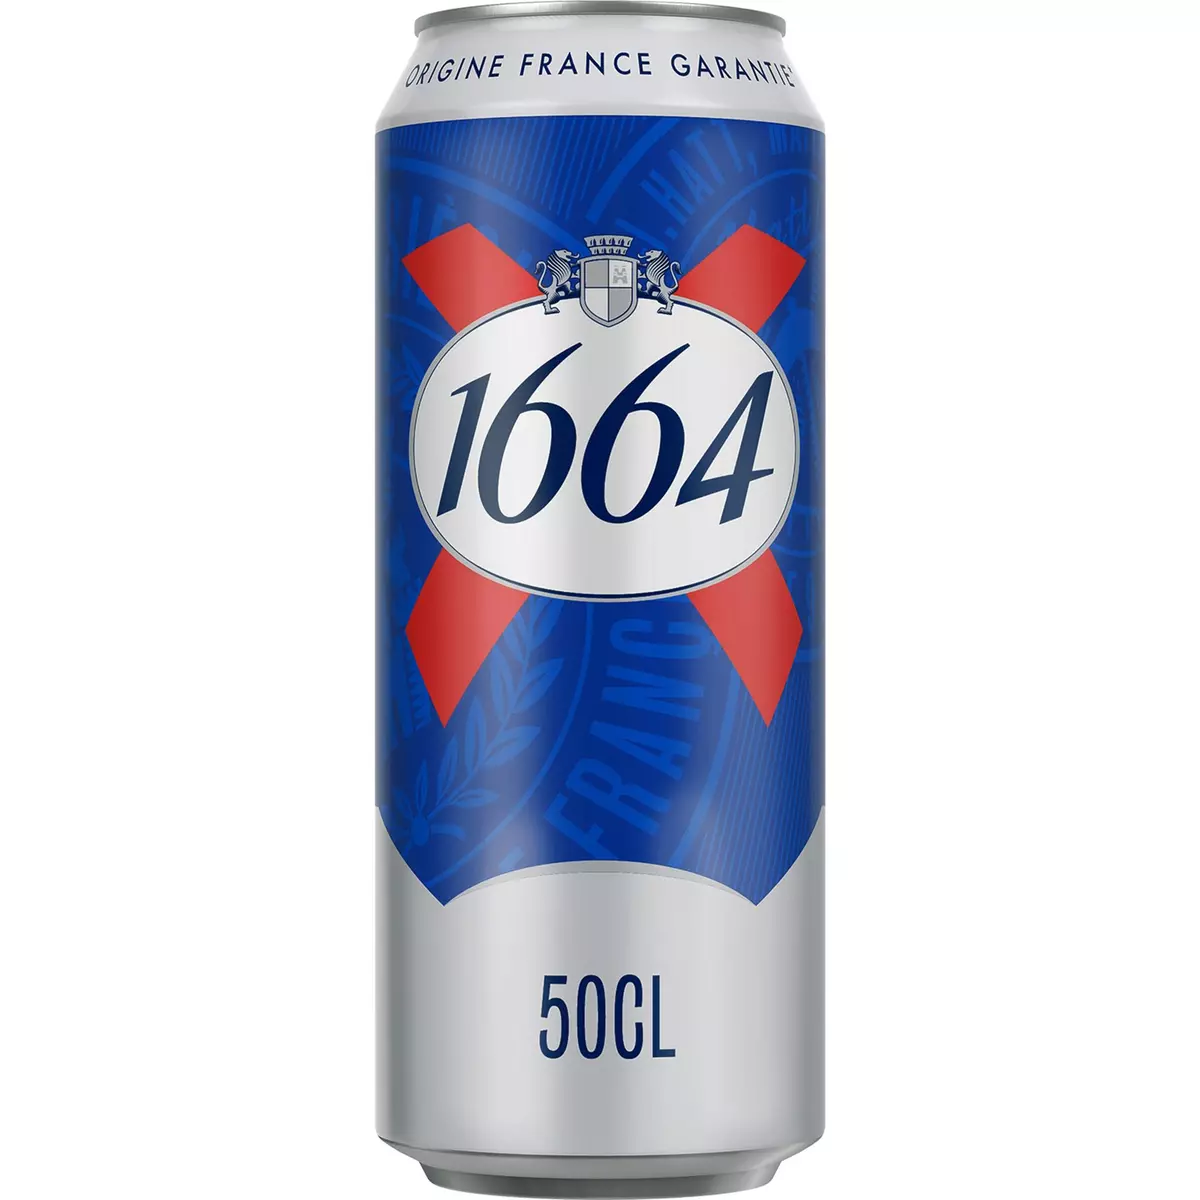 1664 Bière blonde 5,5% boîte 50cl